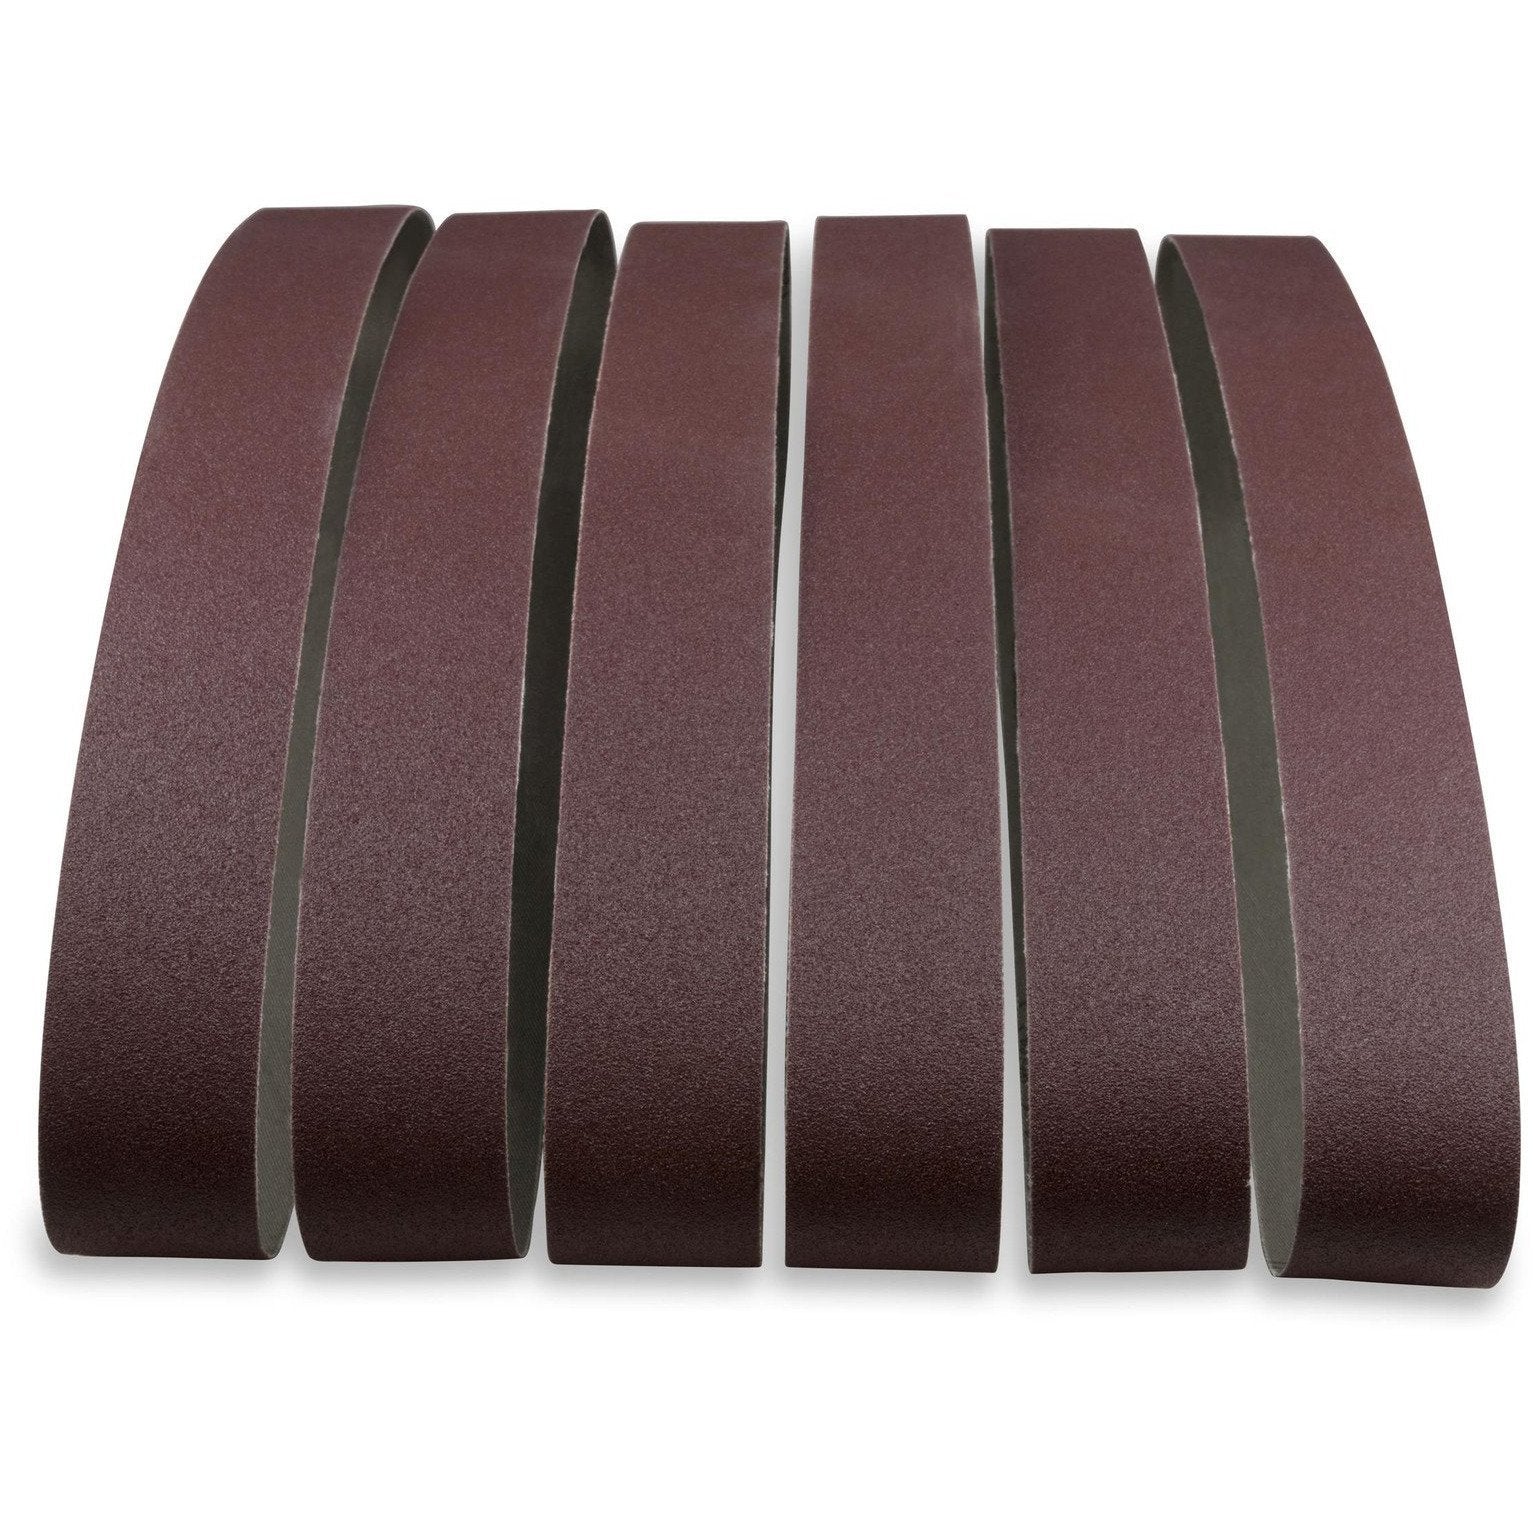 2 X 48 Inch Aluminum Oxide Sanding Belts, 6 Pack - Red Label Abrasives